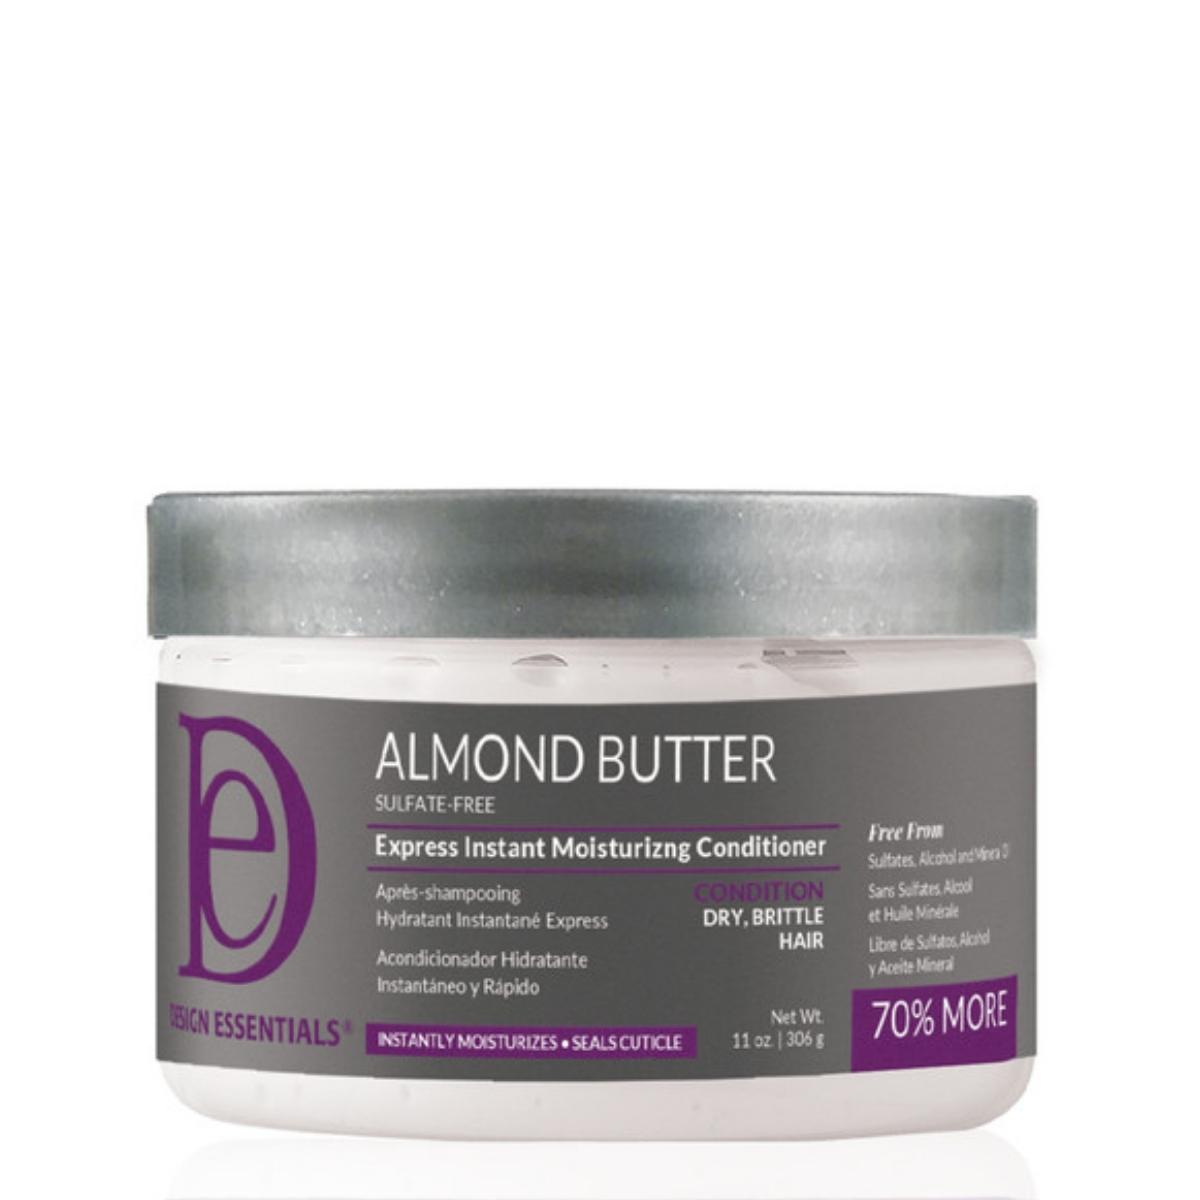 L'Almond Butter Express Instant Moisturizing Conditioner de la gamme Design Essentials est idéal pour prendre soin de ses cheveux malgré les contraintes horaires.